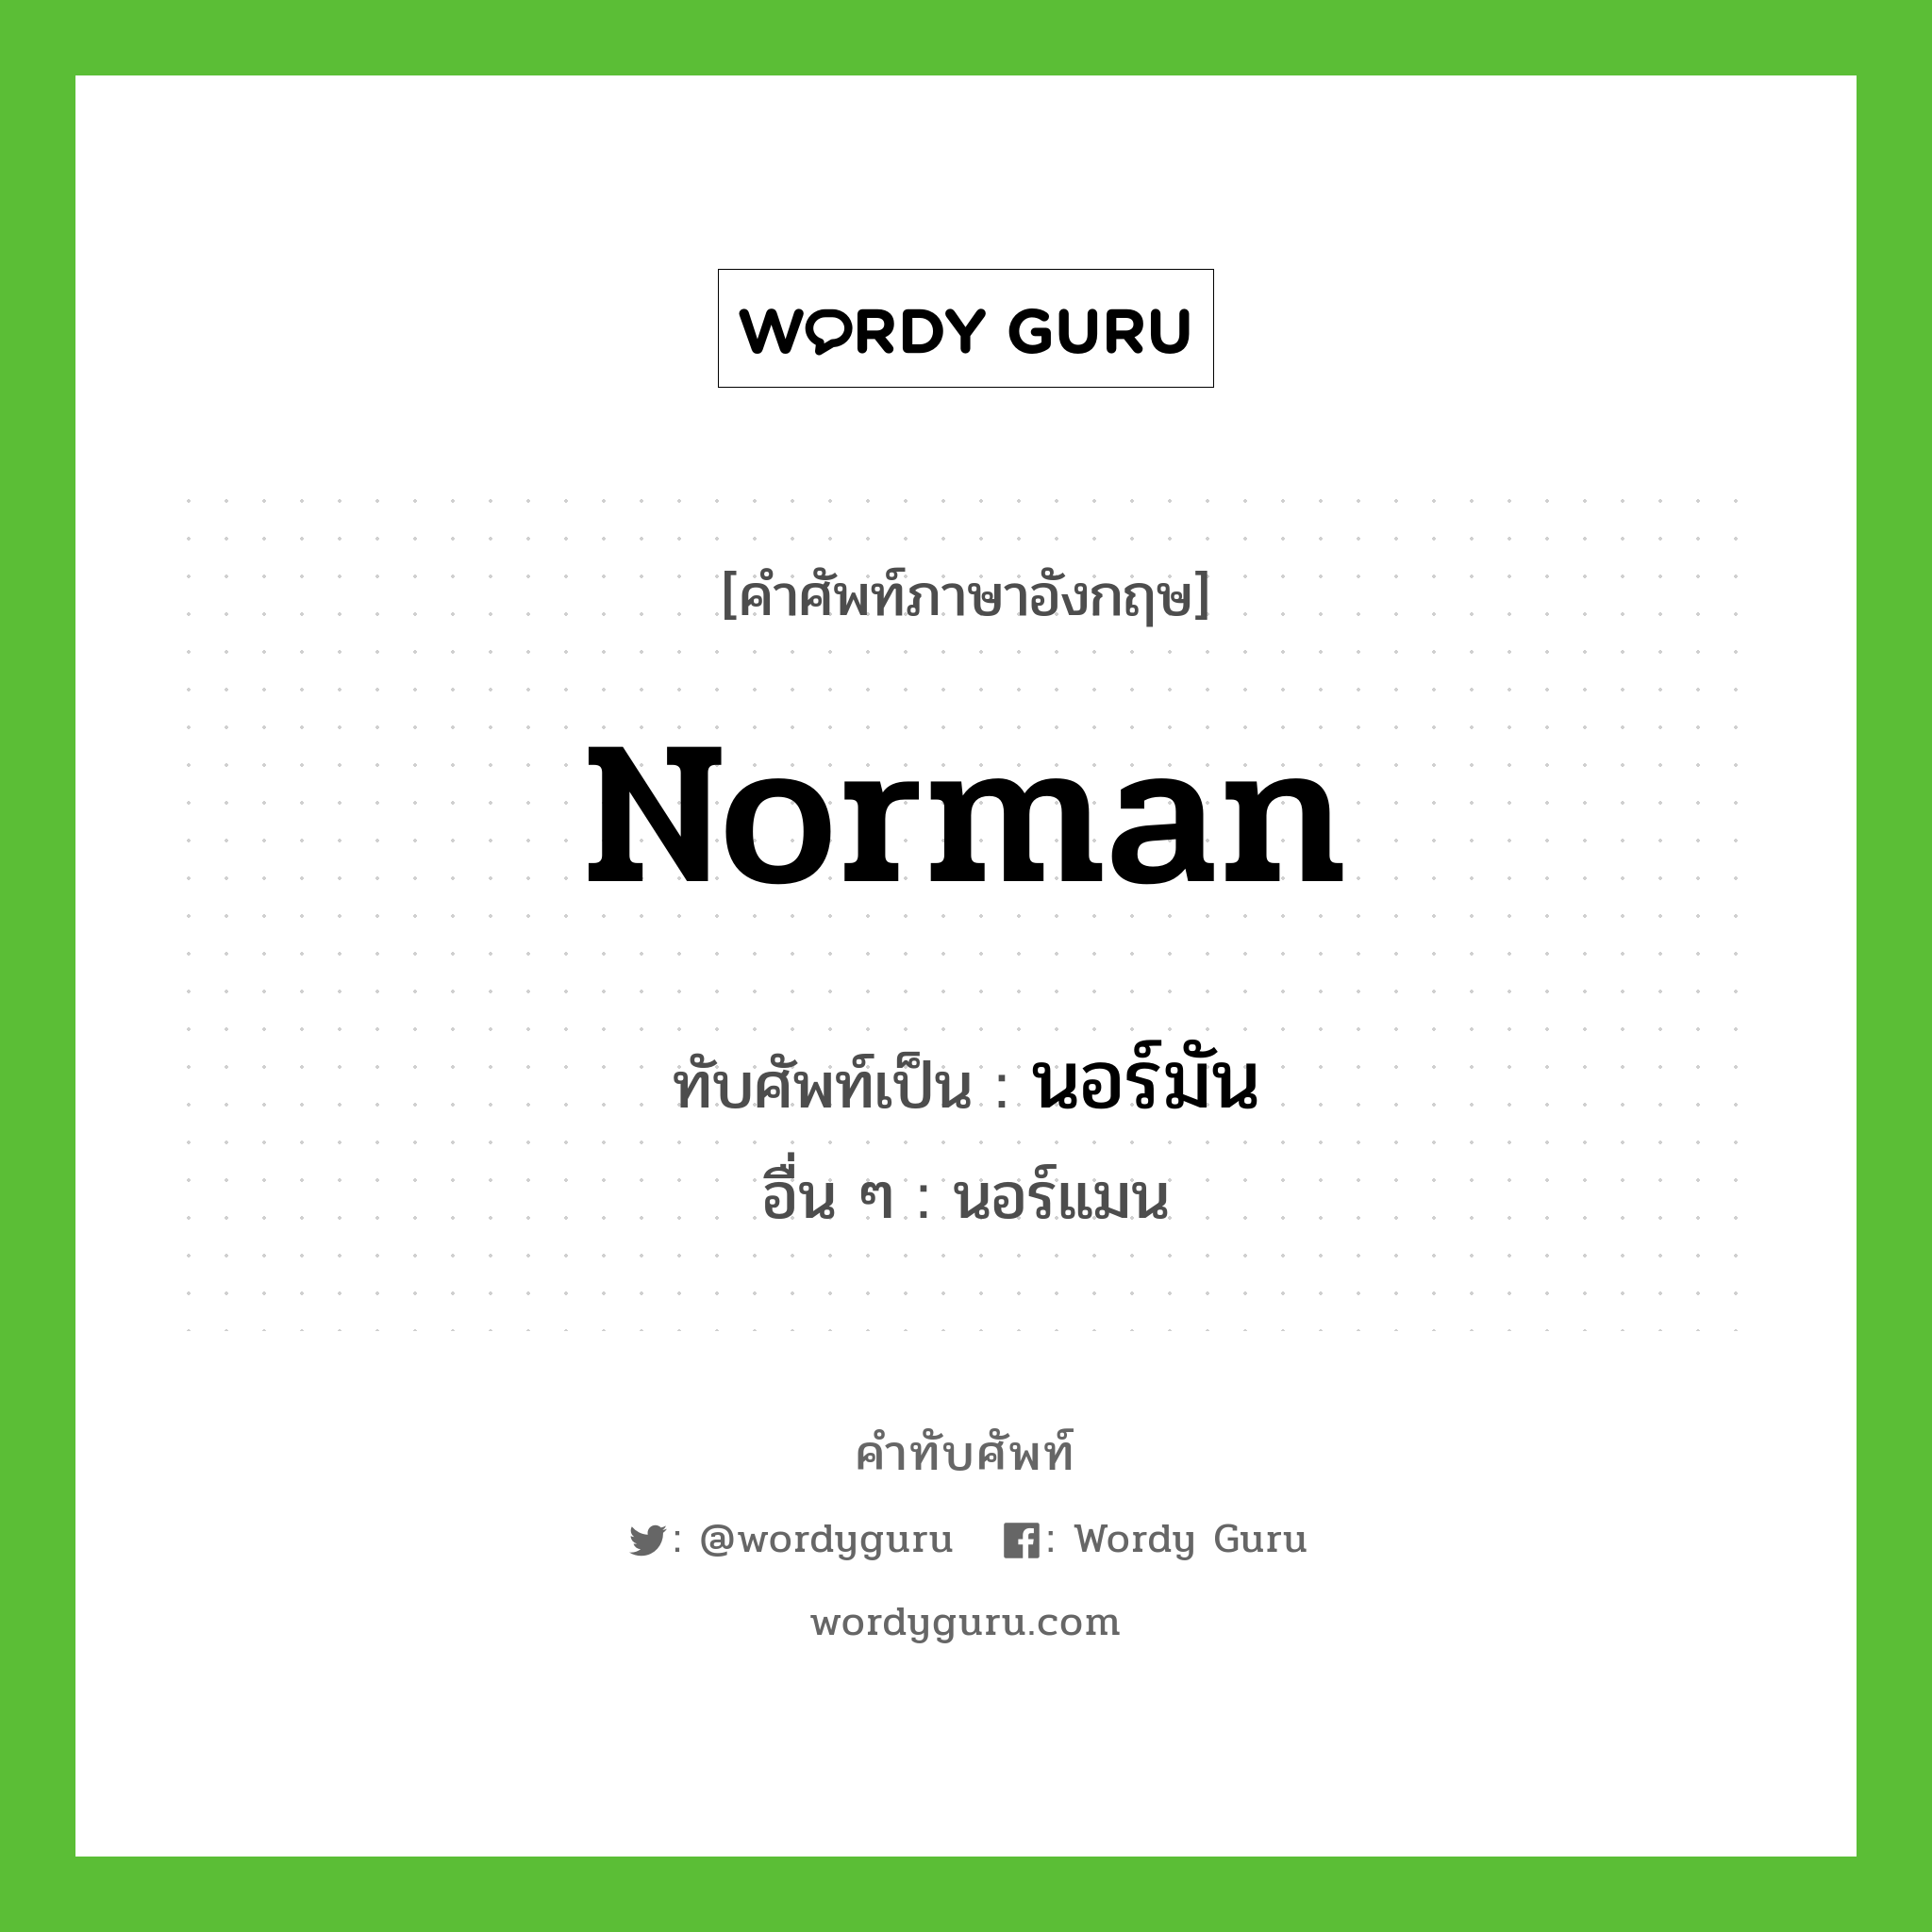 Norman เขียนเป็นคำไทยว่าอะไร?, คำศัพท์ภาษาอังกฤษ Norman ทับศัพท์เป็น นอร์มัน อื่น ๆ นอร์แมน